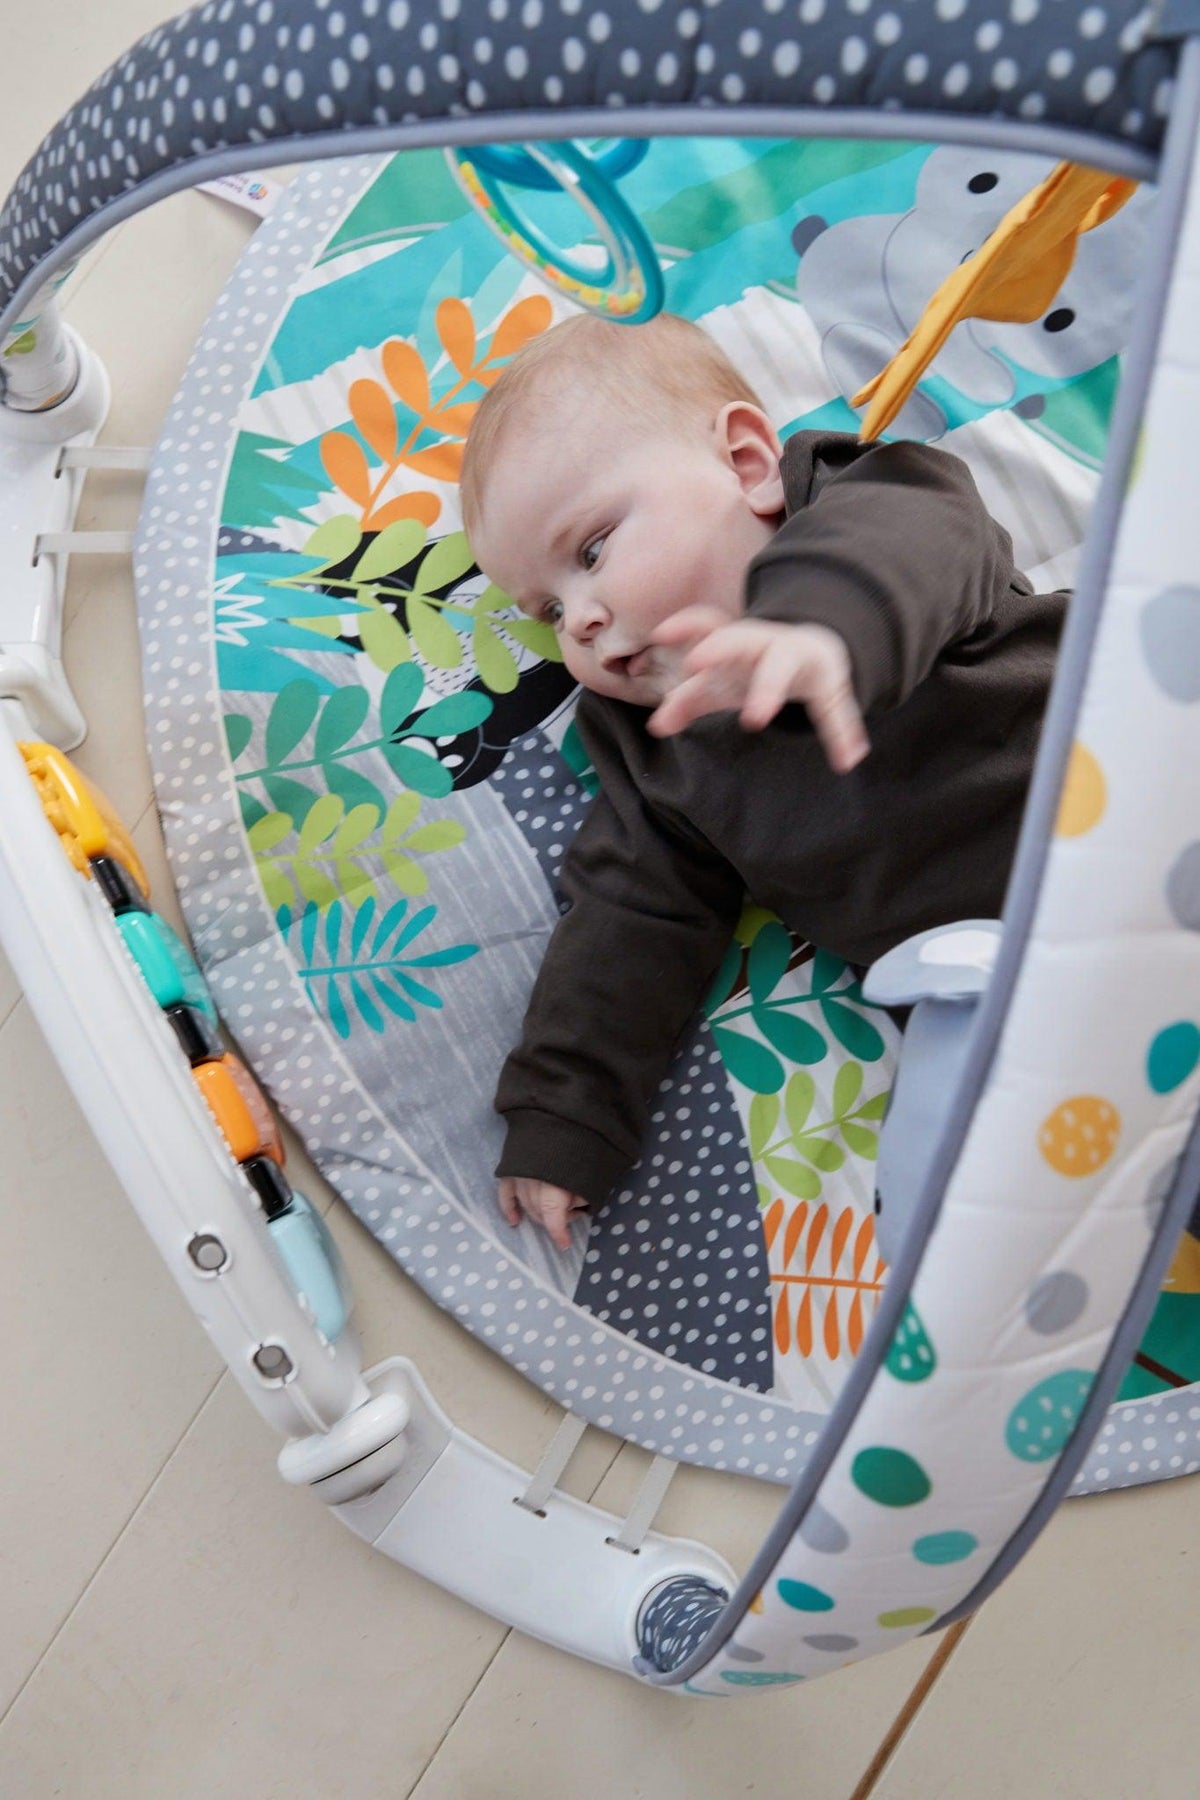 Scandinavian Baby Products - Aktivitetsstativ med kick-and-play funktion - Legemadras - MamaMilla